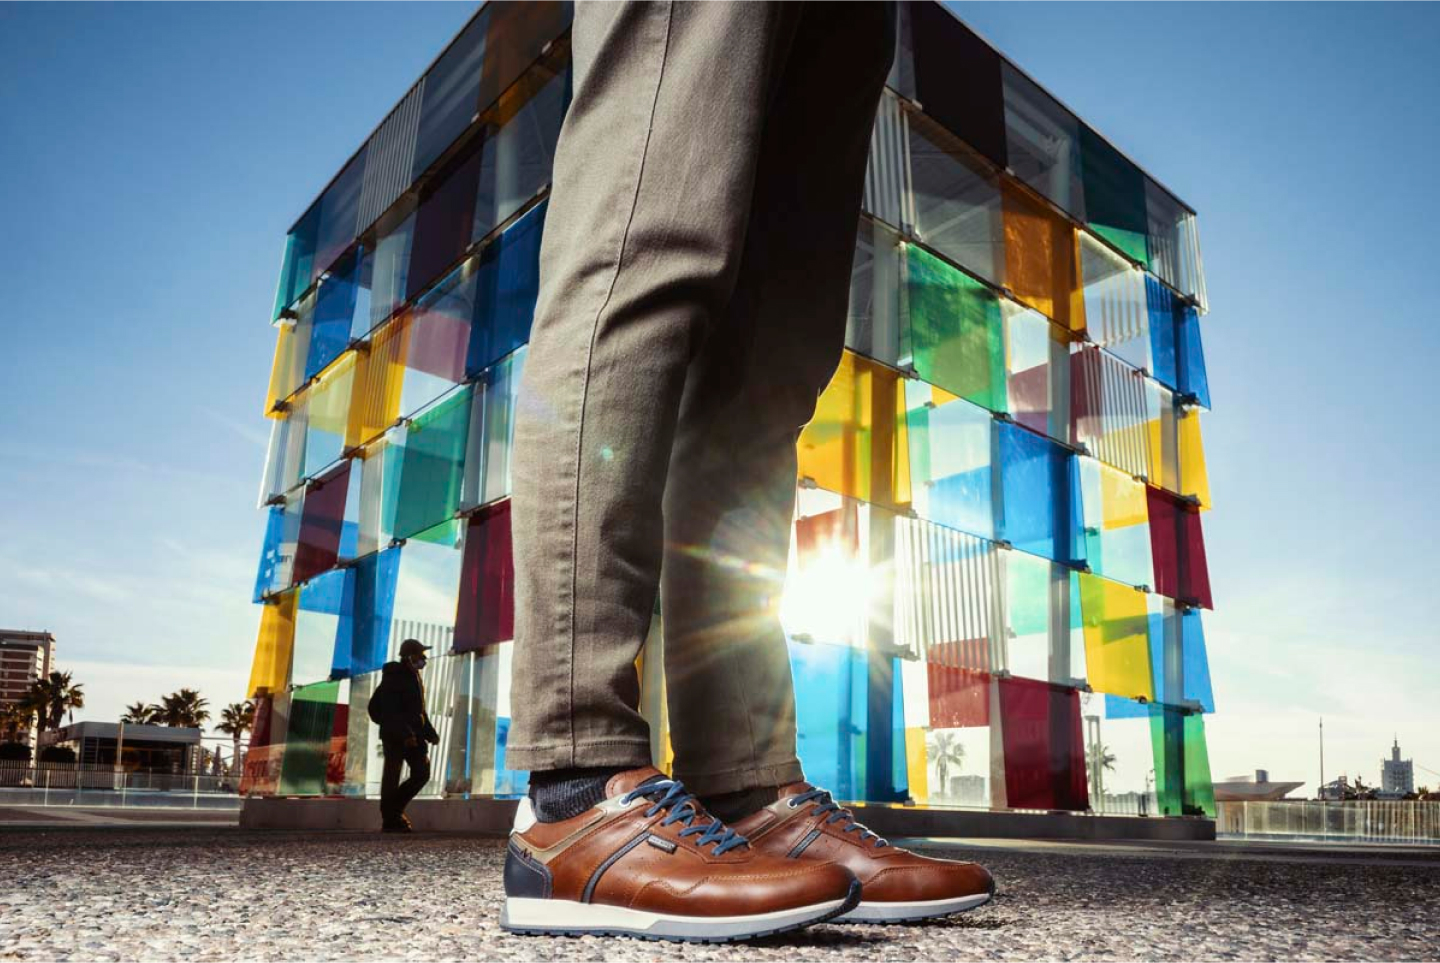 Zapatos de Pikolinos y Centre Pompidou, edificio colorido.